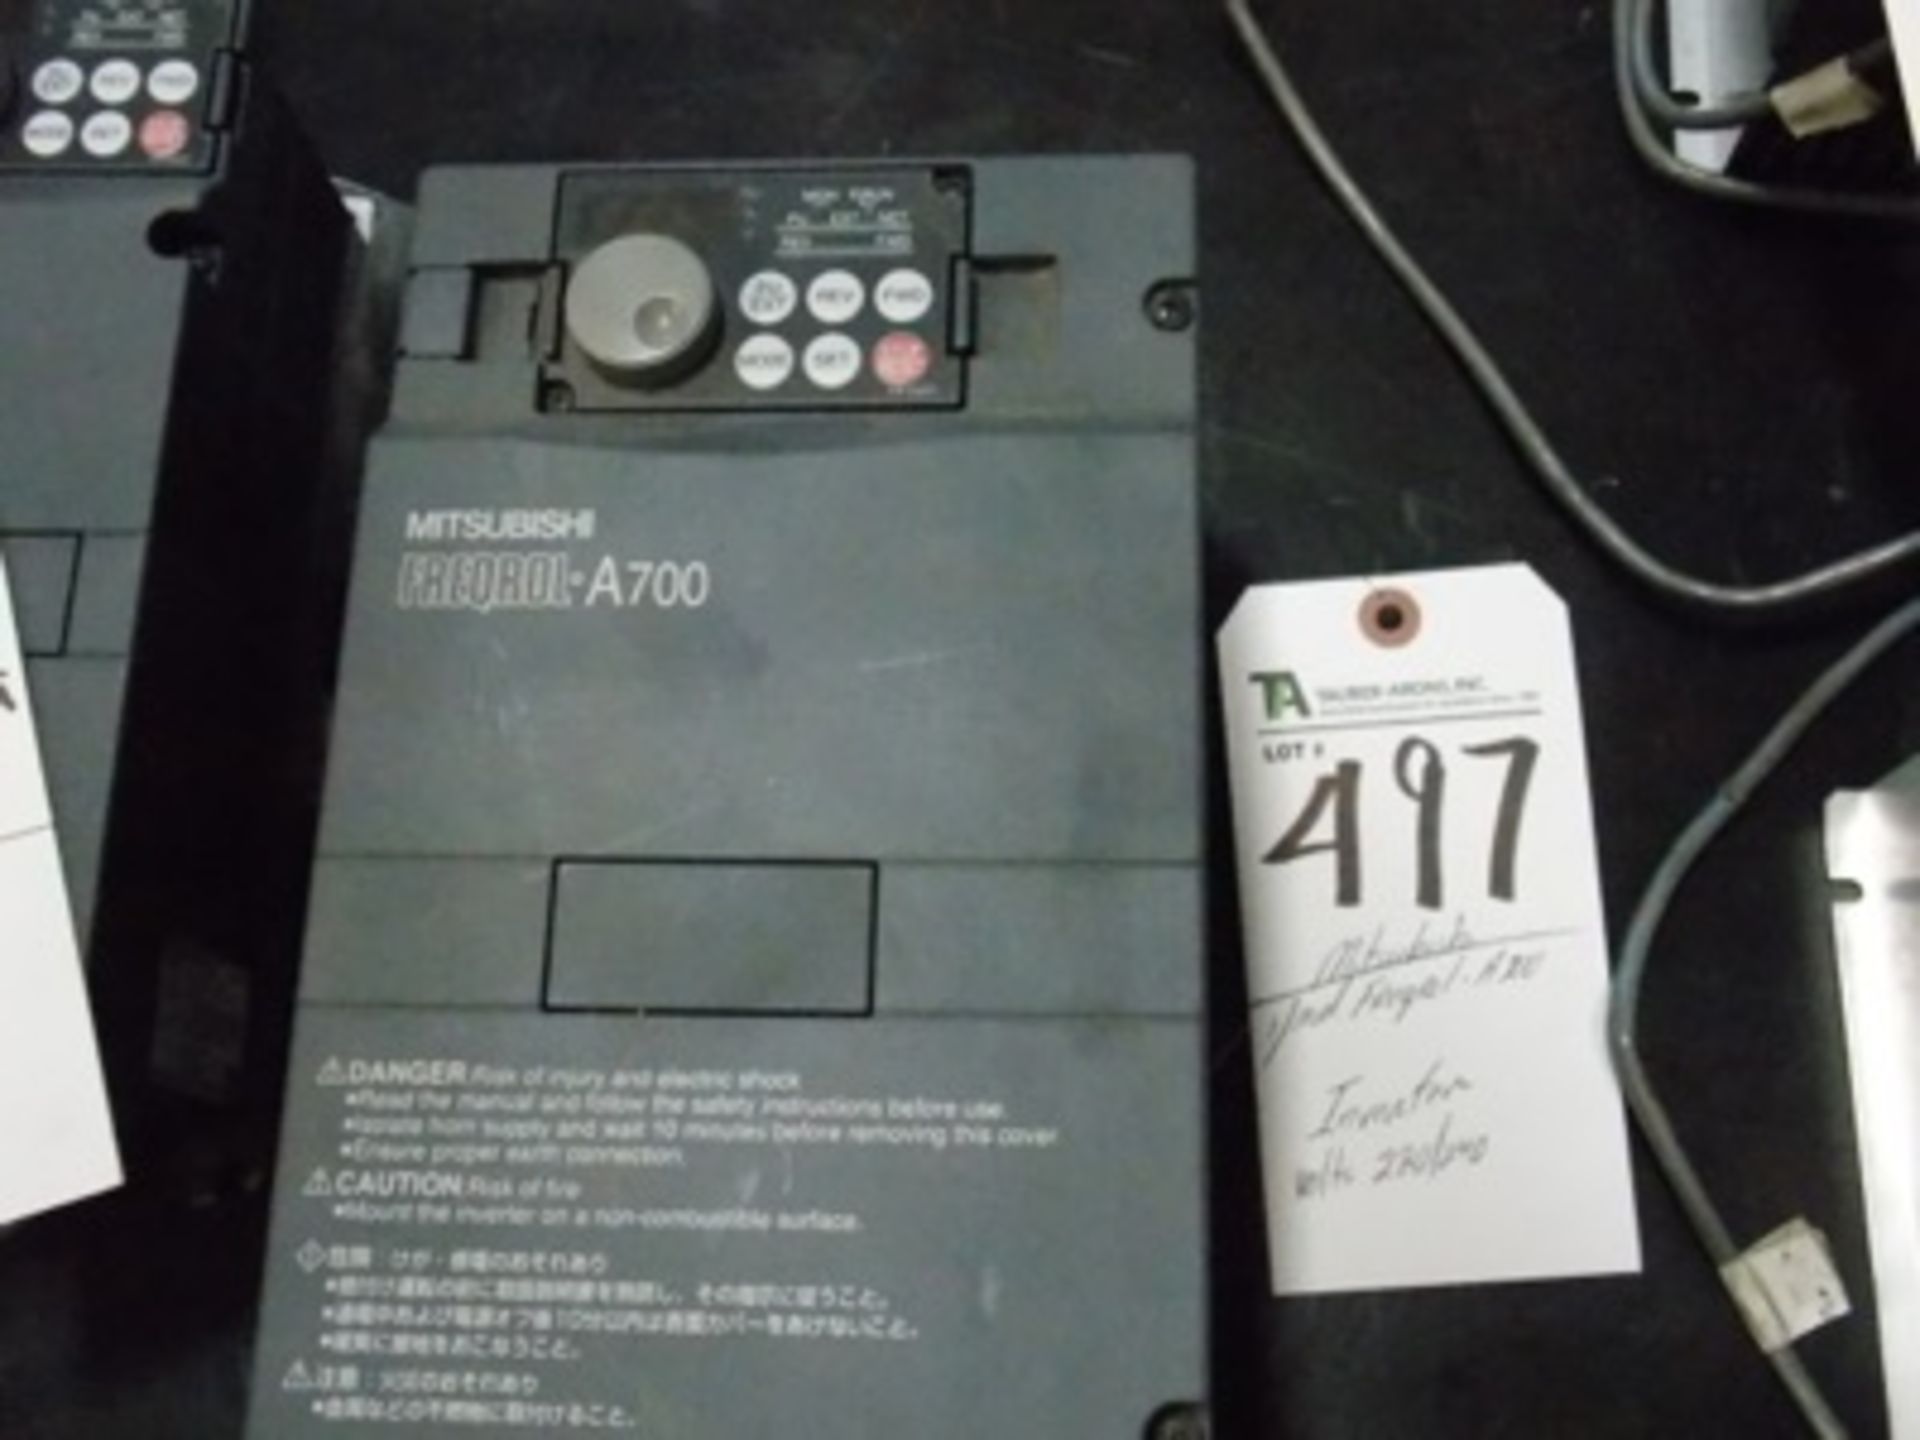 Mitsubishi mod. Frequol-A700 Inverter, 220-240 Volts